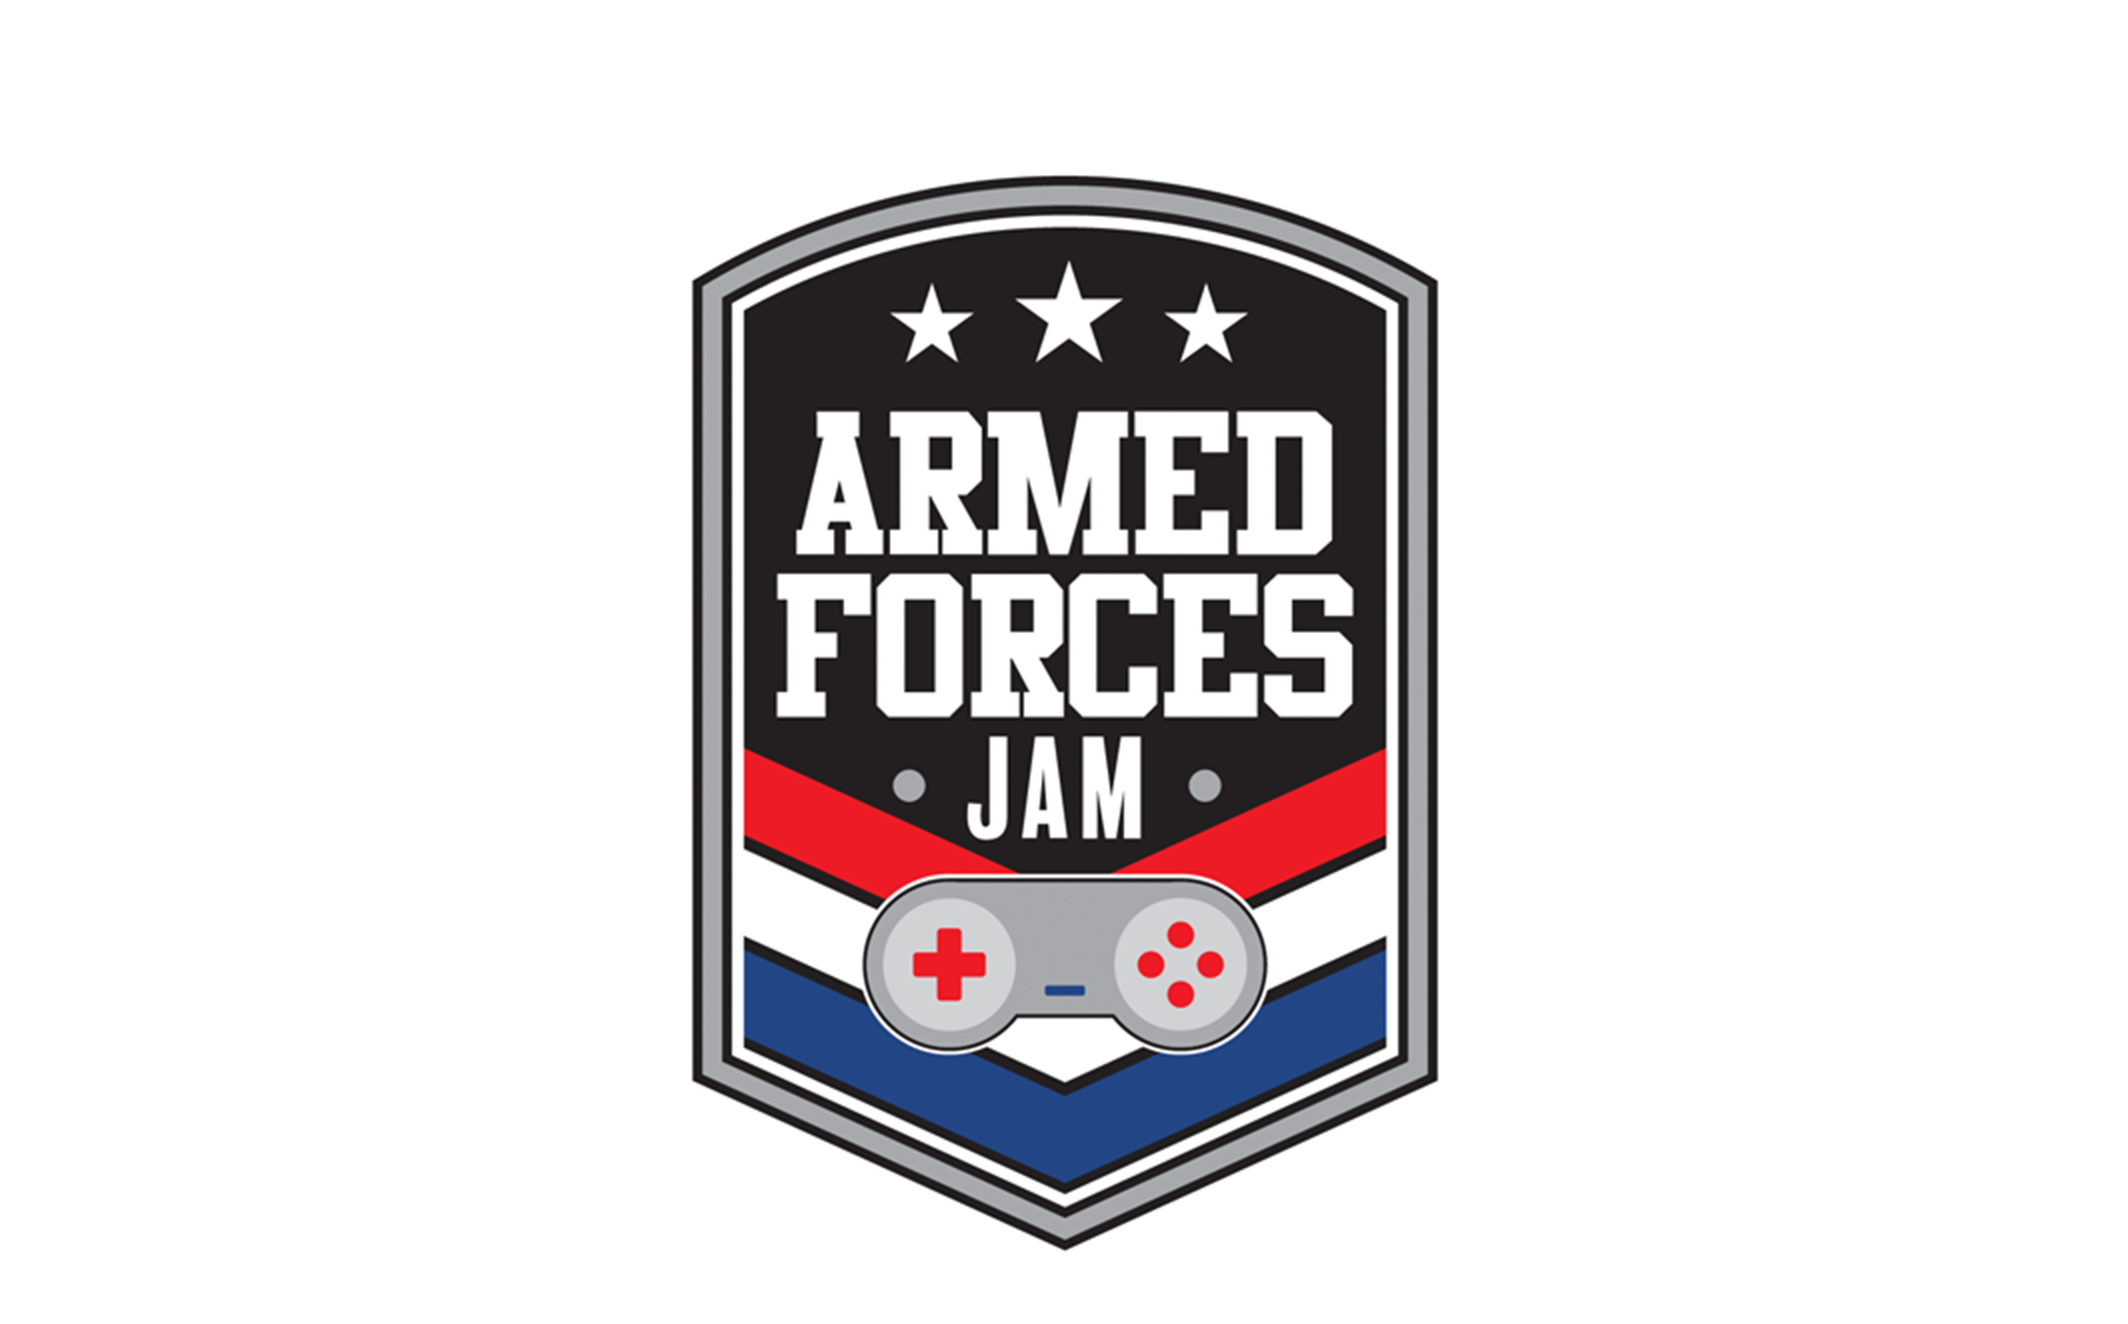 Armed Forces Jam logo